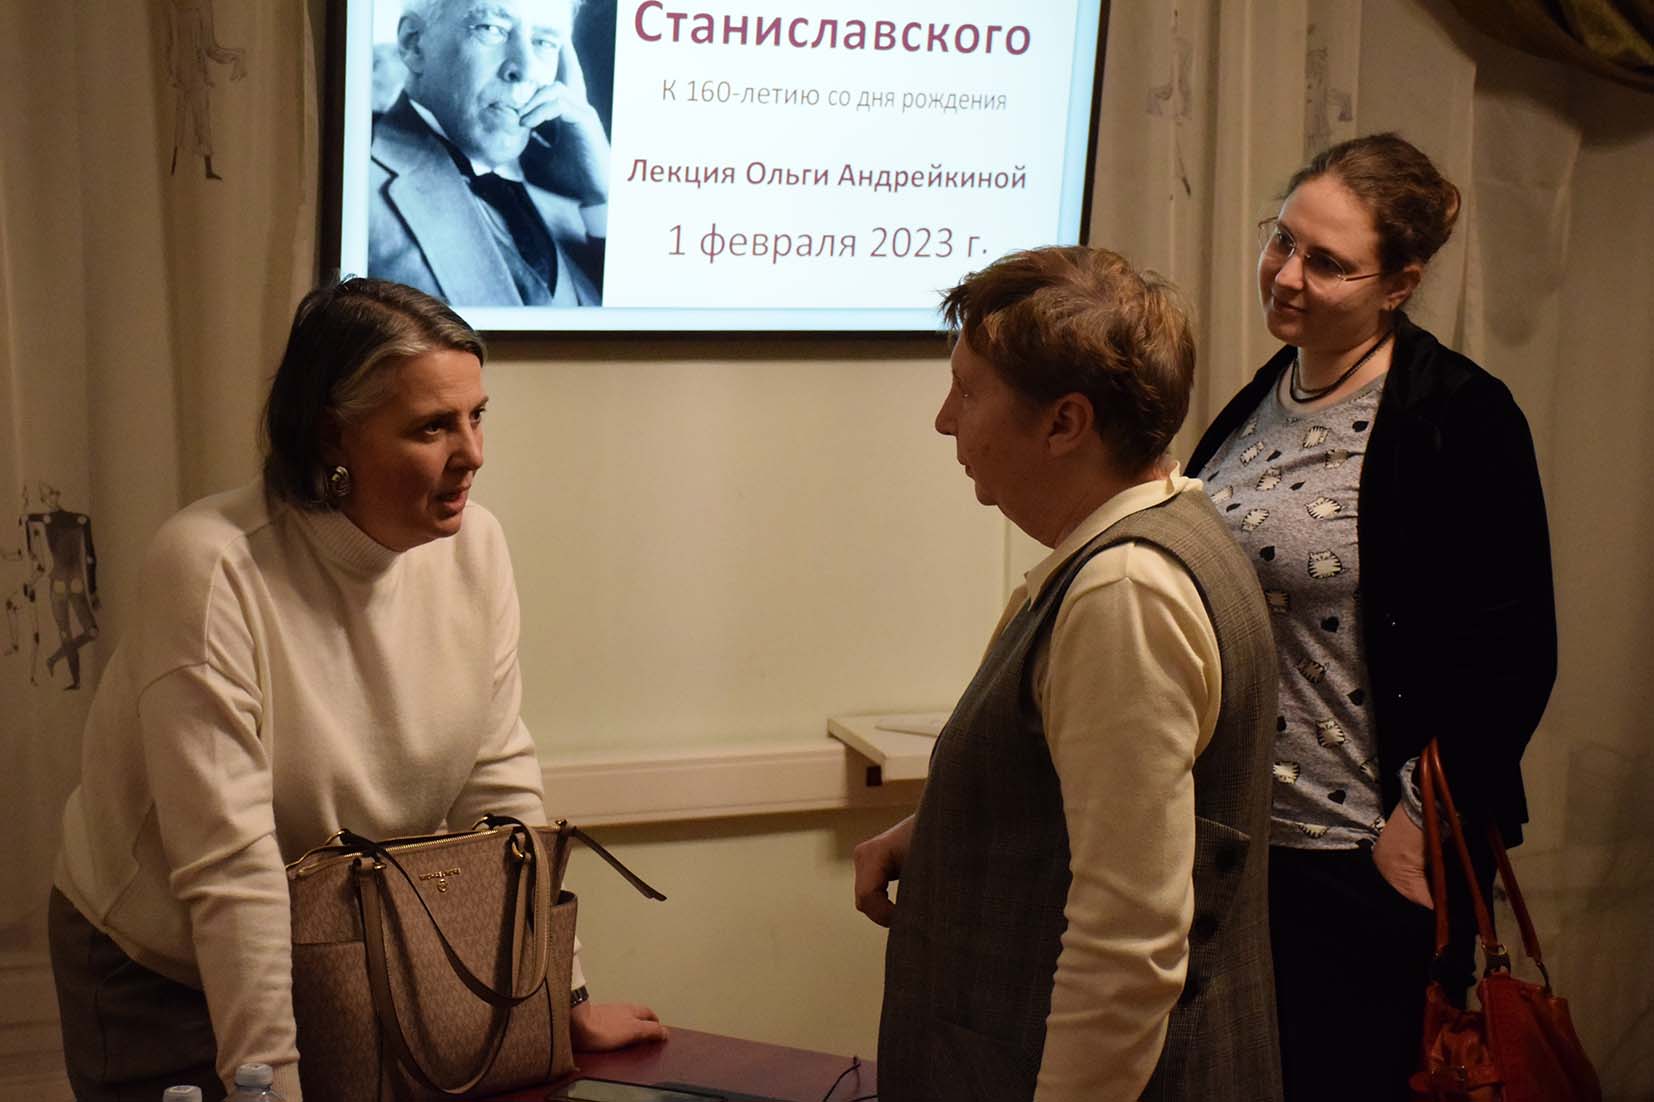 В РГБИ состоялась лекция Ольги Андрейкиной «Вселенная Станиславского»